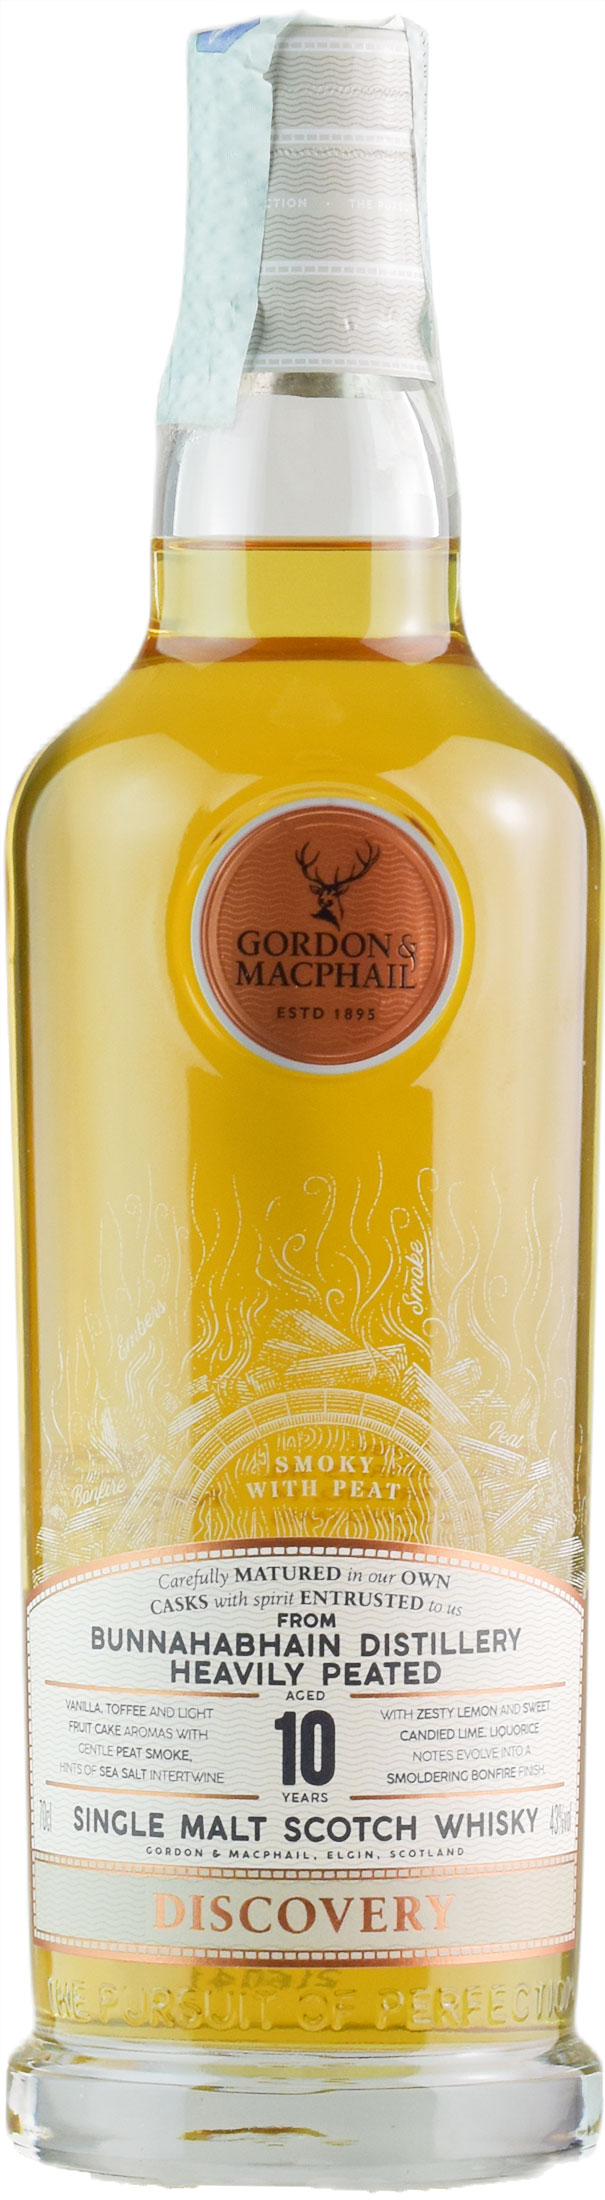 Gordon & Macphail Whisky Bunnahabhain 10 Anni